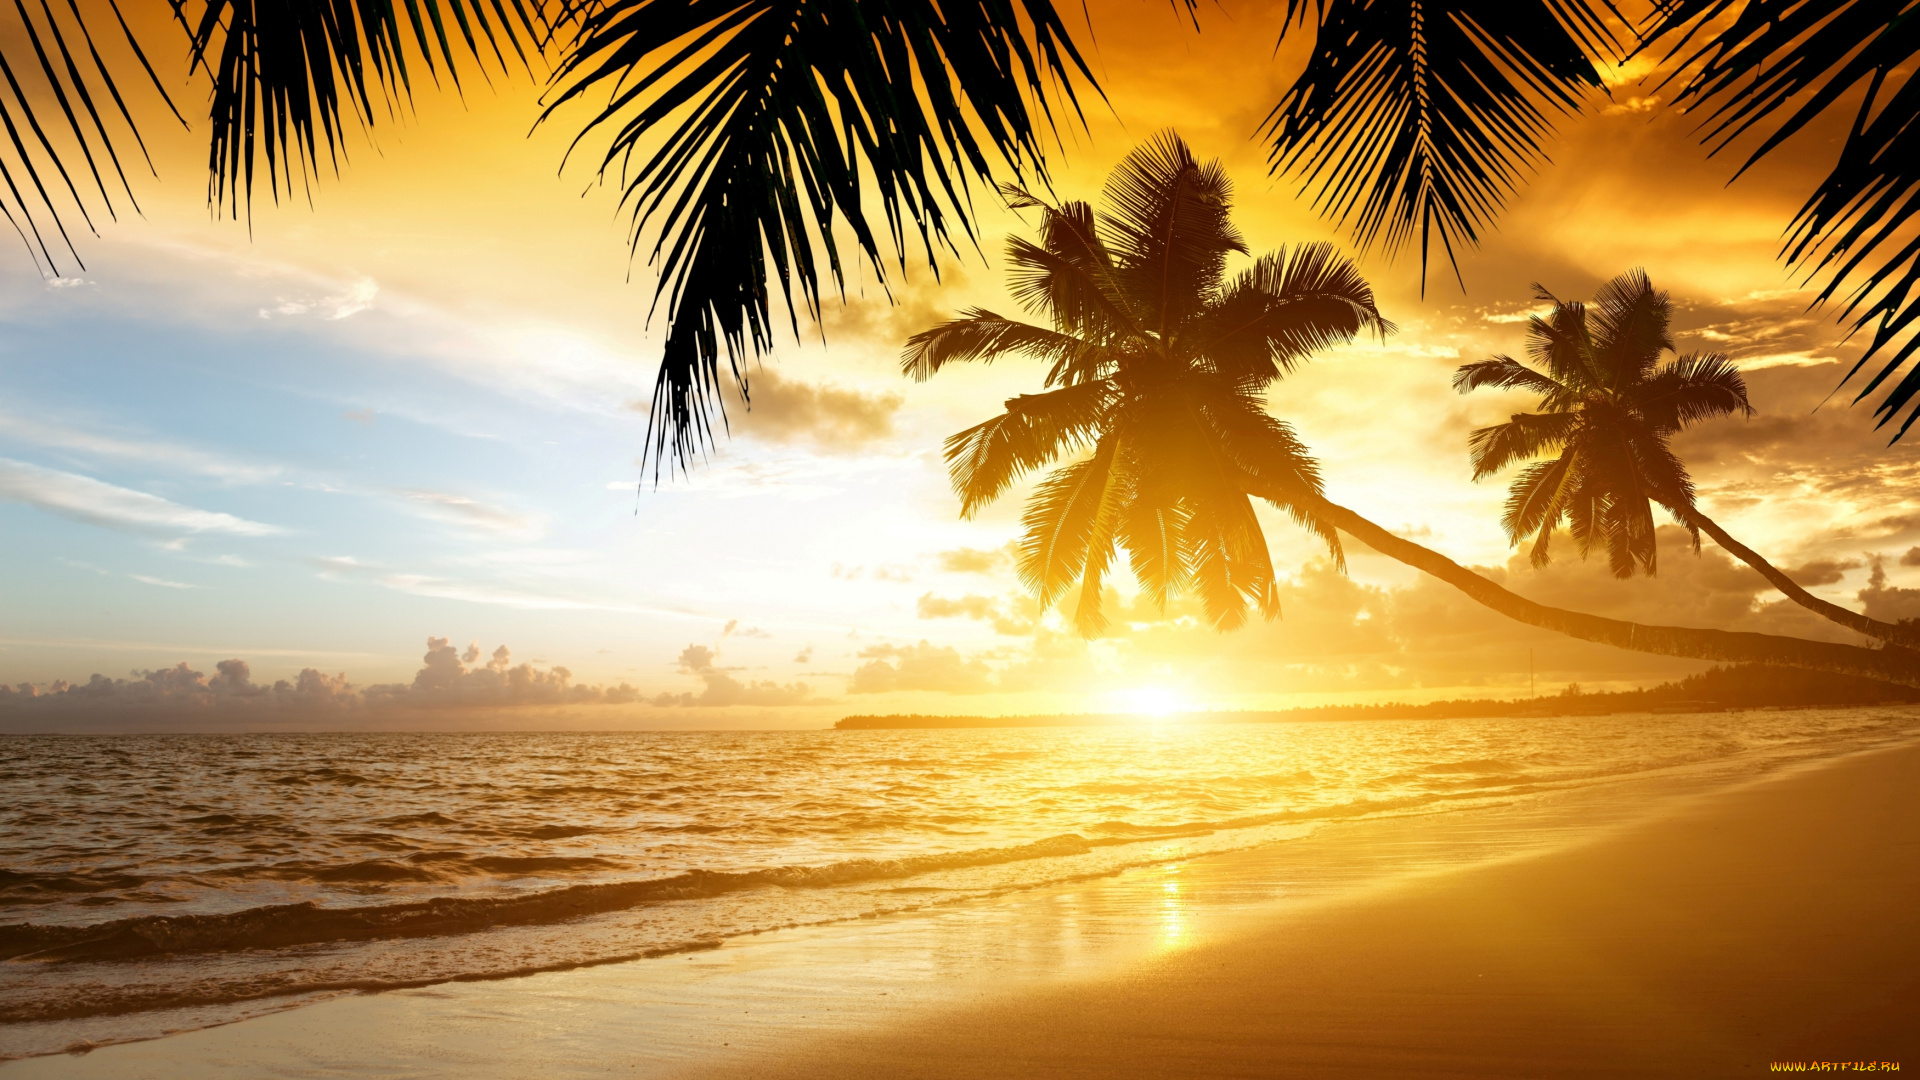 природа, тропики, закат, пальмы, берег, море, песок, пляж, sand, summer, palm, ocean, sea, coast, beach, paradise, sunset, tropical